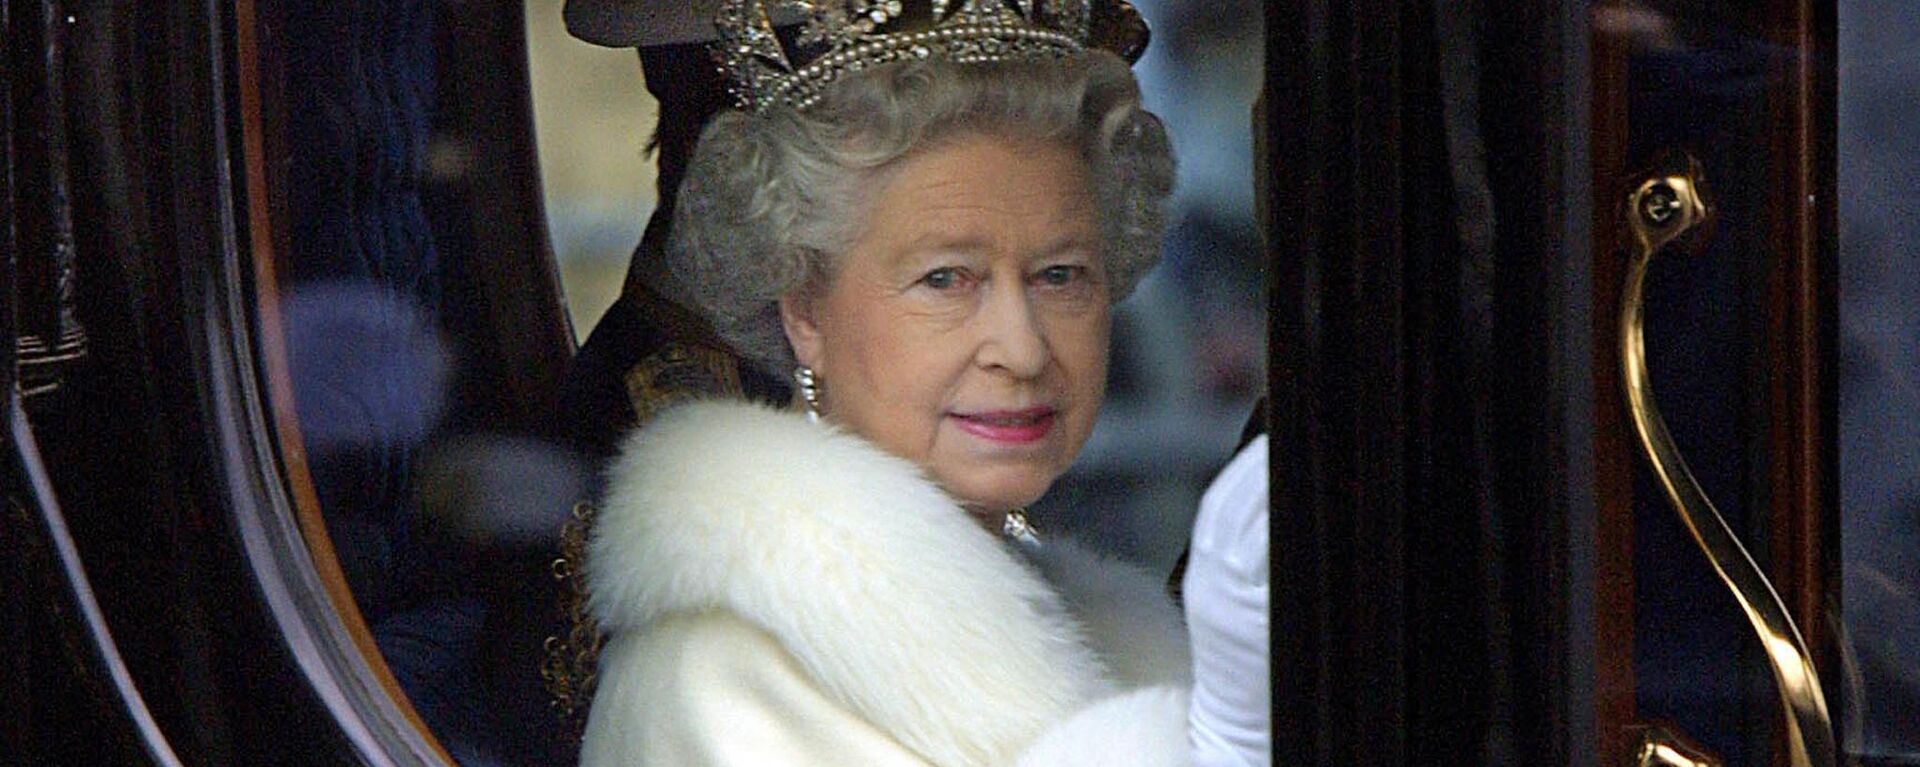 الملكة إليزابيث الثانية تنظر إلى الحشد من عربتها الحصان وهي تغادر قصر باكنغهام لافتتاح البرلمان في لندن، إنجلترا 6 ديسمبر 2000. - سبوتنيك عربي, 1920, 09.09.2022